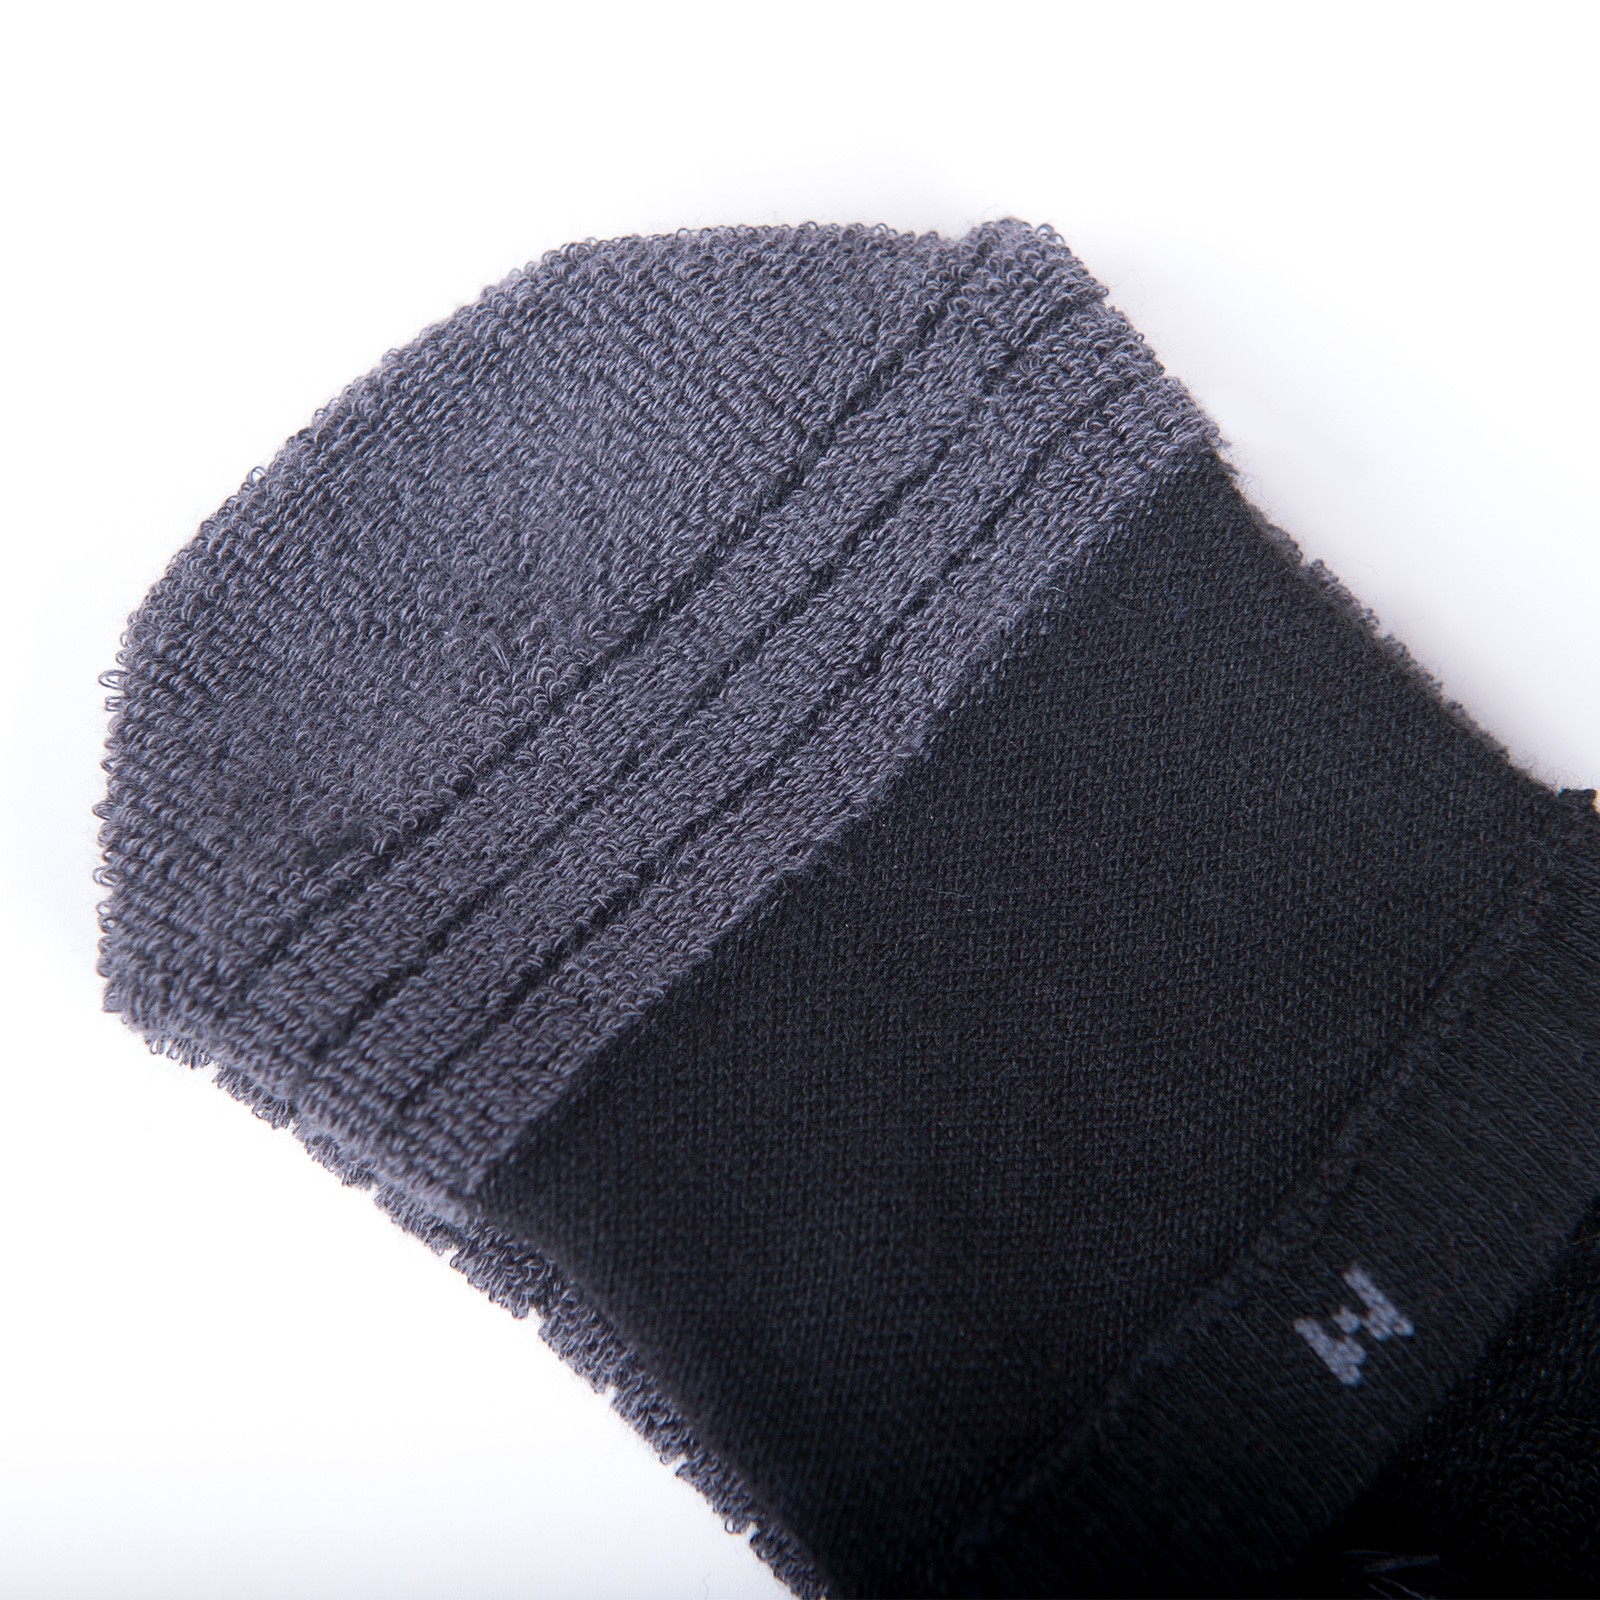 1 par de calcetines deportivos AONIJIE E4819 con cinco dedos, gruesos, cálidos, transpirables, para correr al aire libre, senderismo, calcetines de felpa de cinco dedos